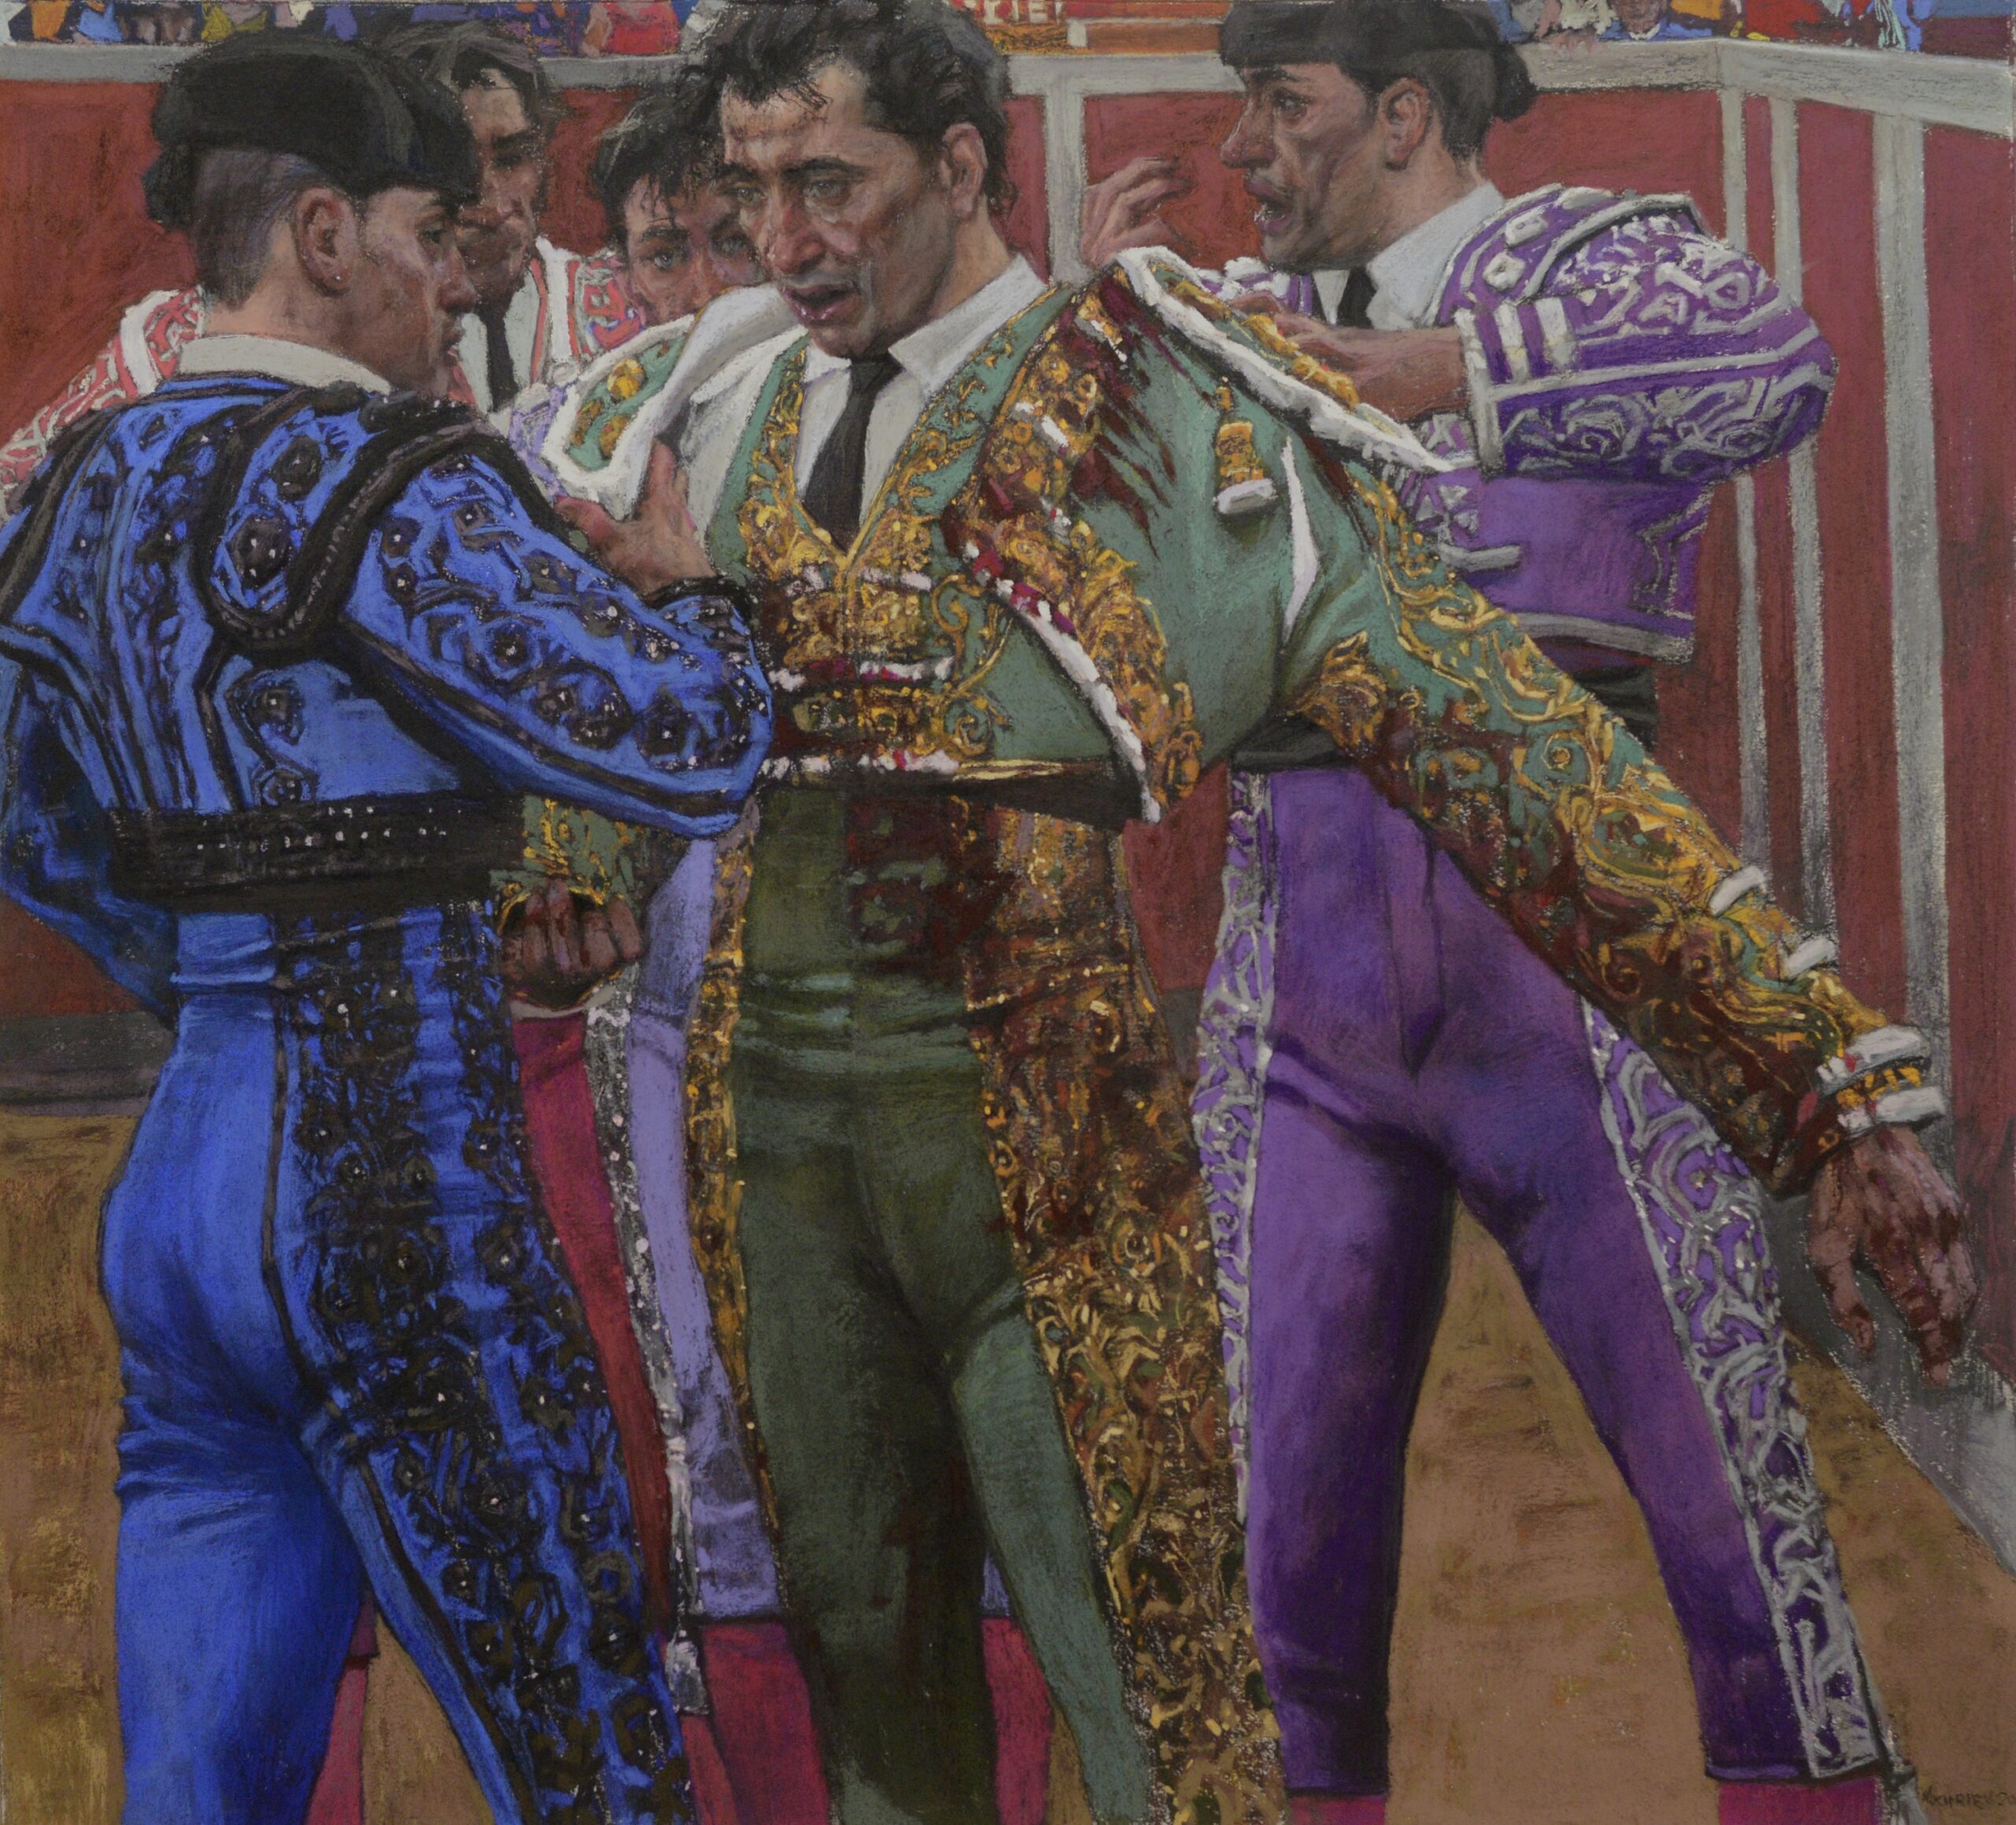 Daud Akhriev, "Toreros," pastel painting